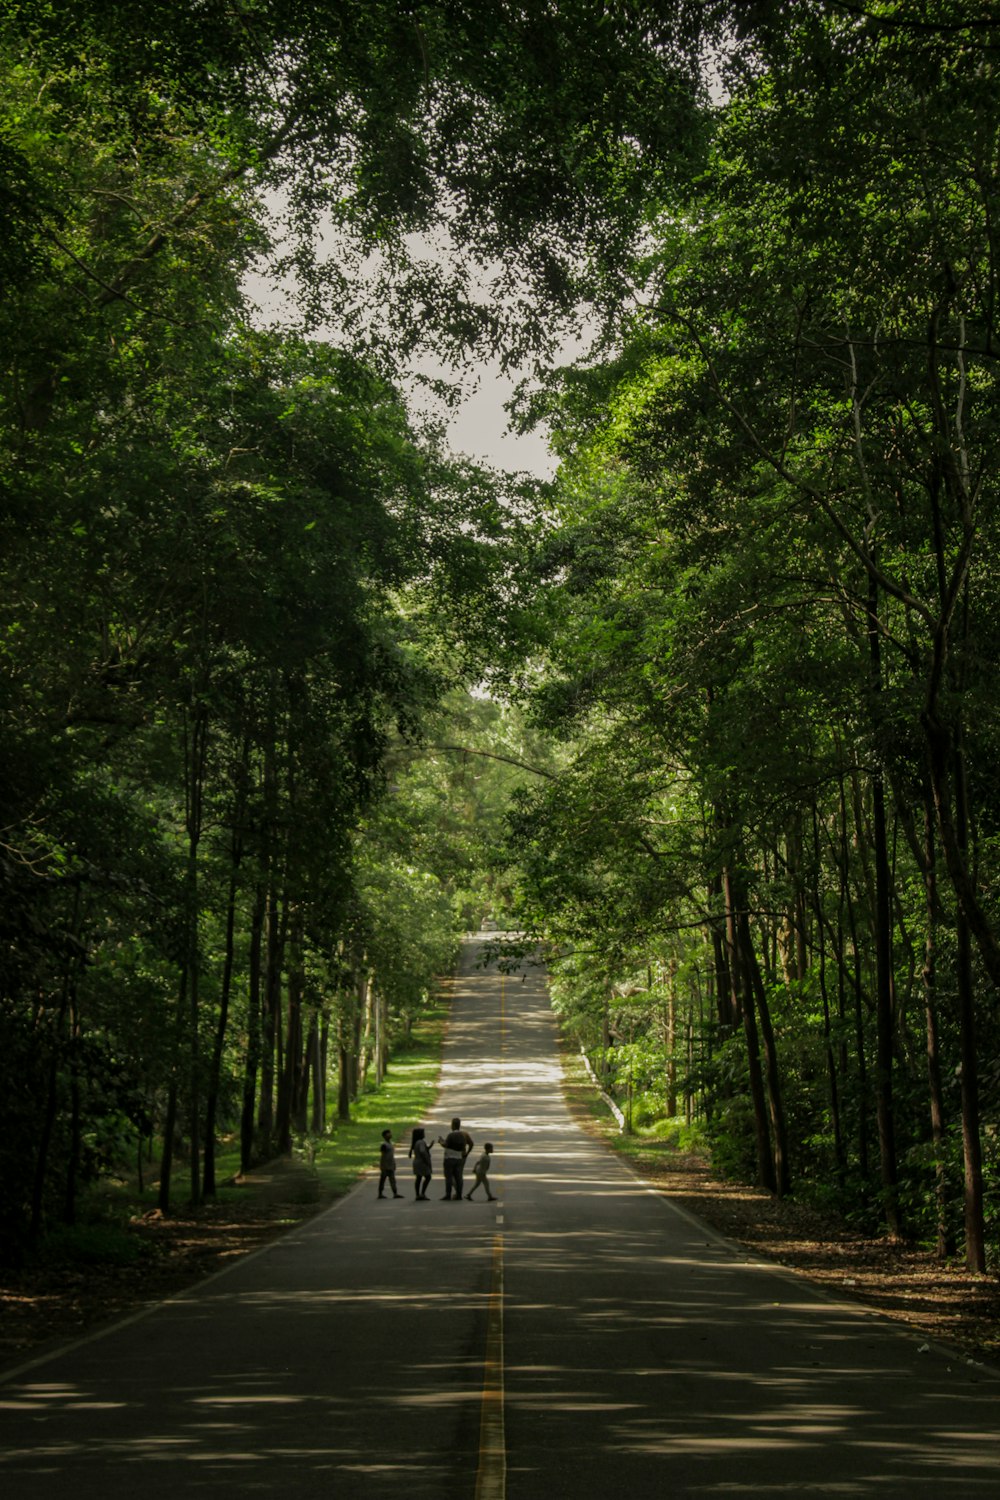 persone che camminano sul sentiero tra gli alberi verdi durante il giorno